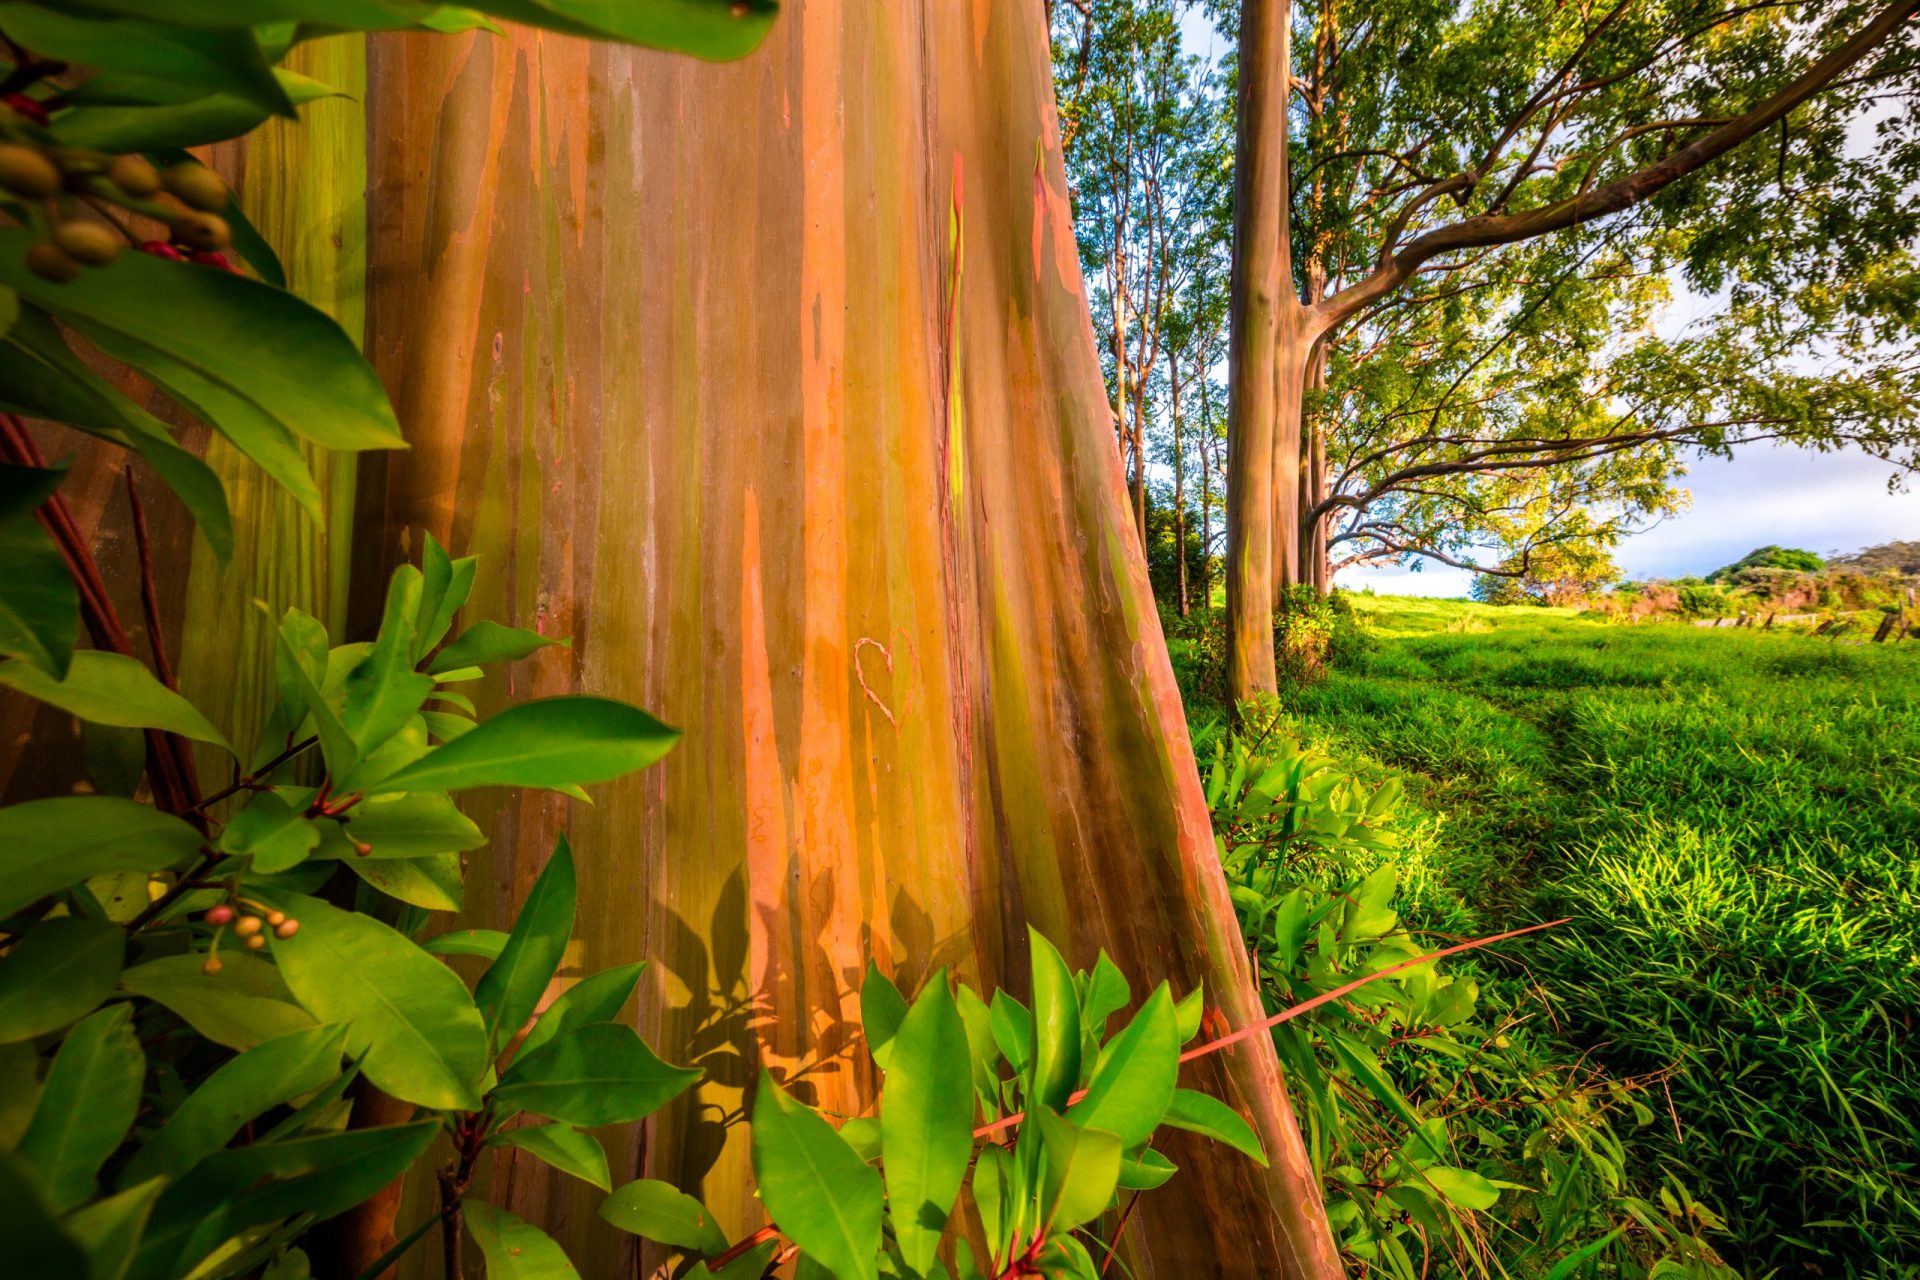 Rainbow Eucalyptus Trees in Hawaii